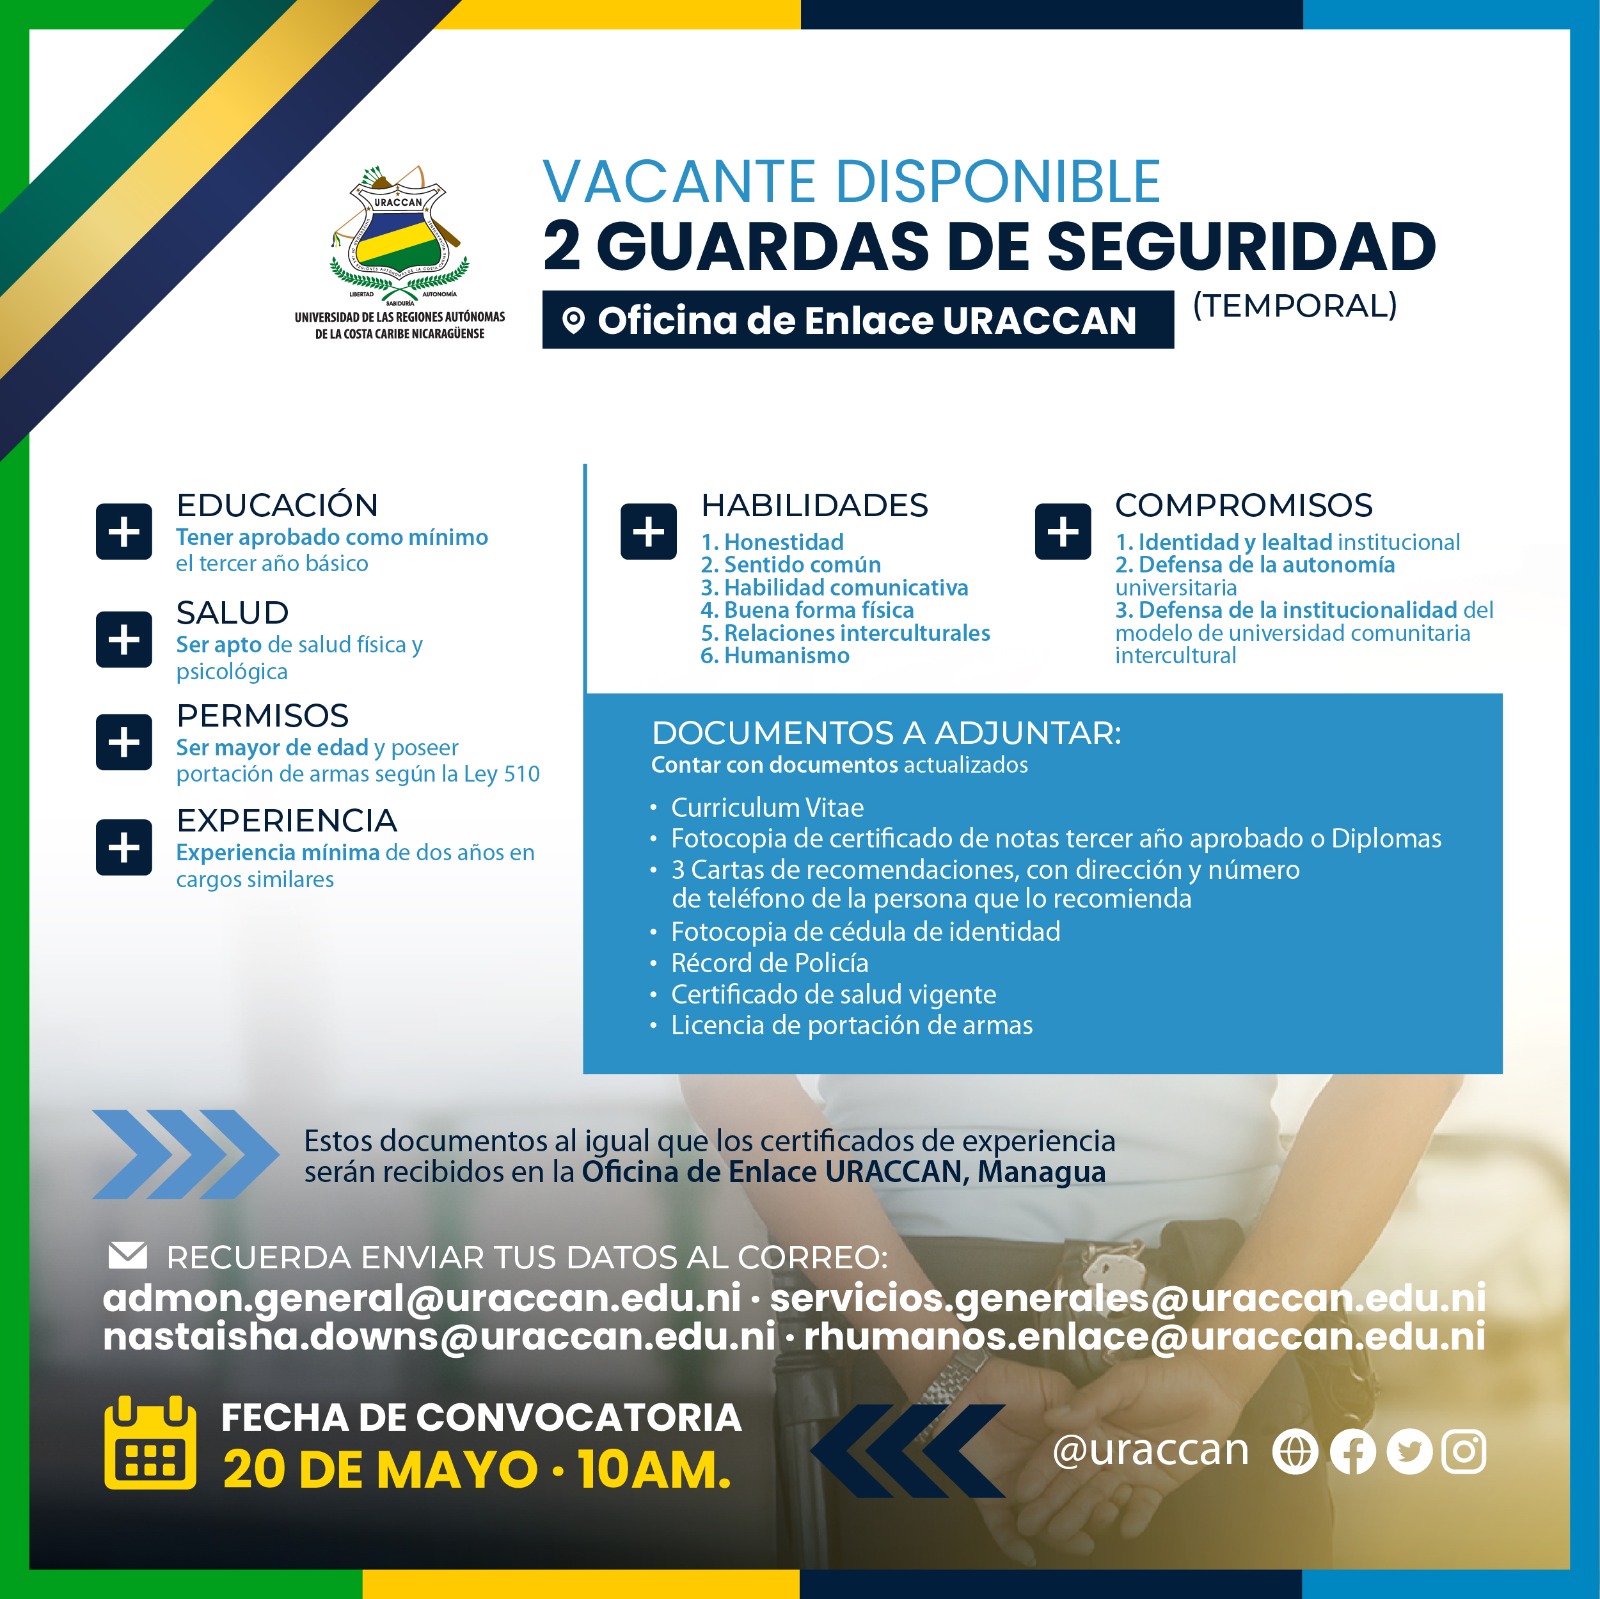 Dos vacantes disponible para el cargo de Vigilante Temporal para Oficina de Enlace, Managua.